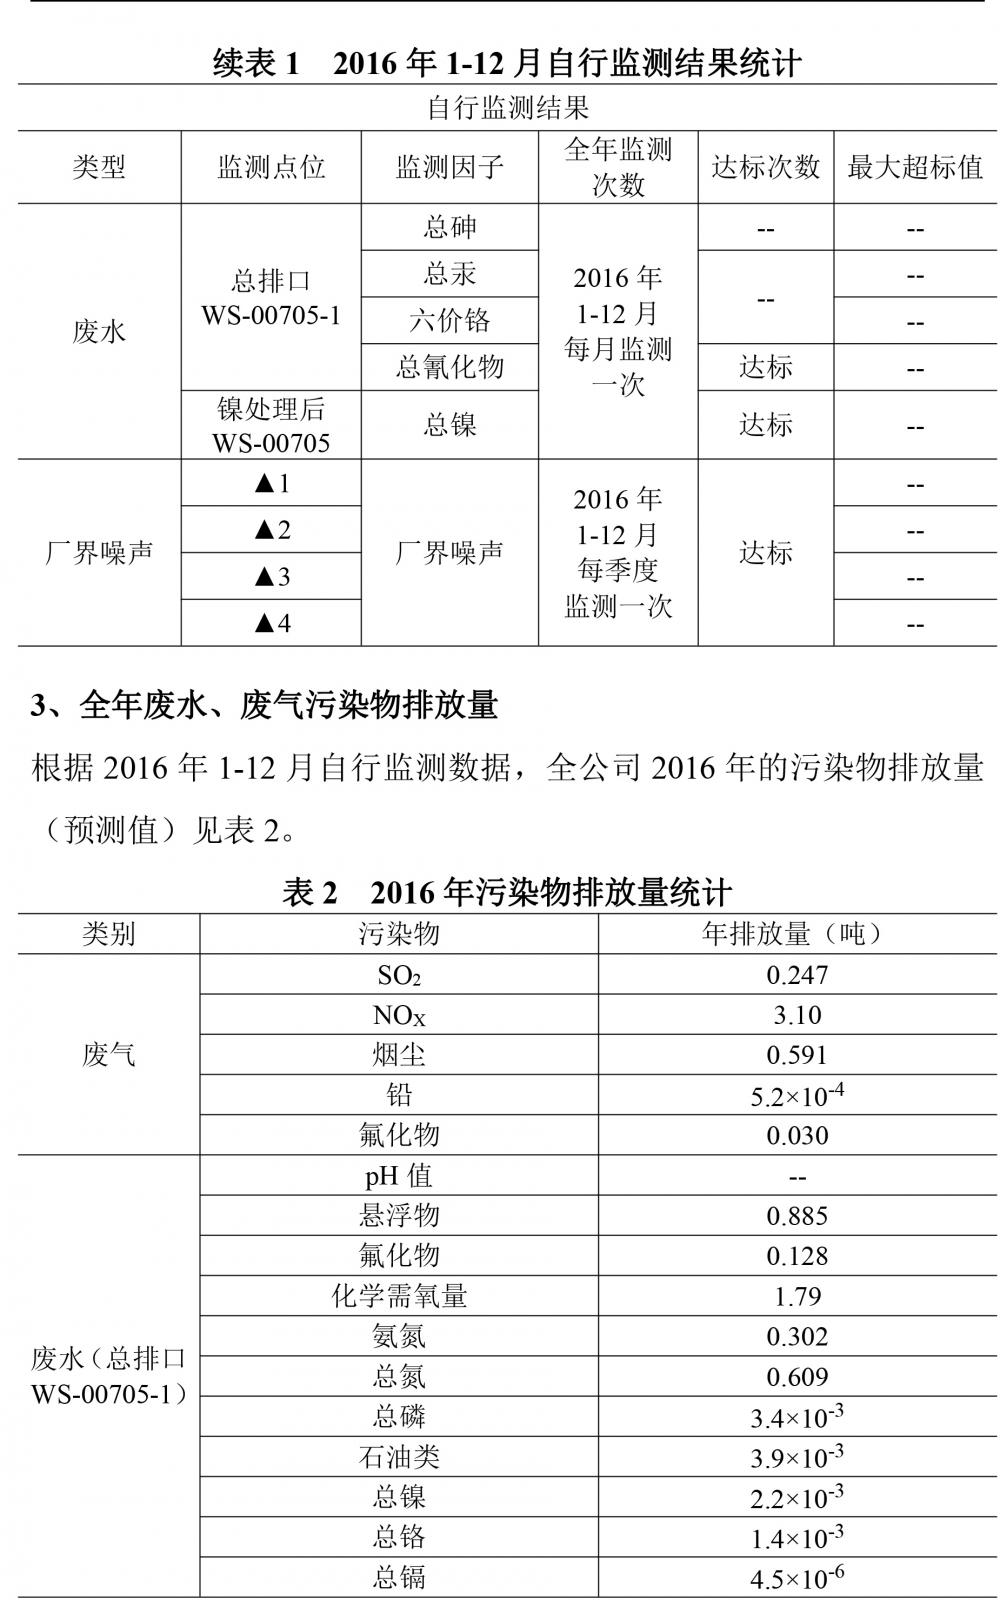 广东天马铝业有限公司2016自行监测年度报告-3.jpg